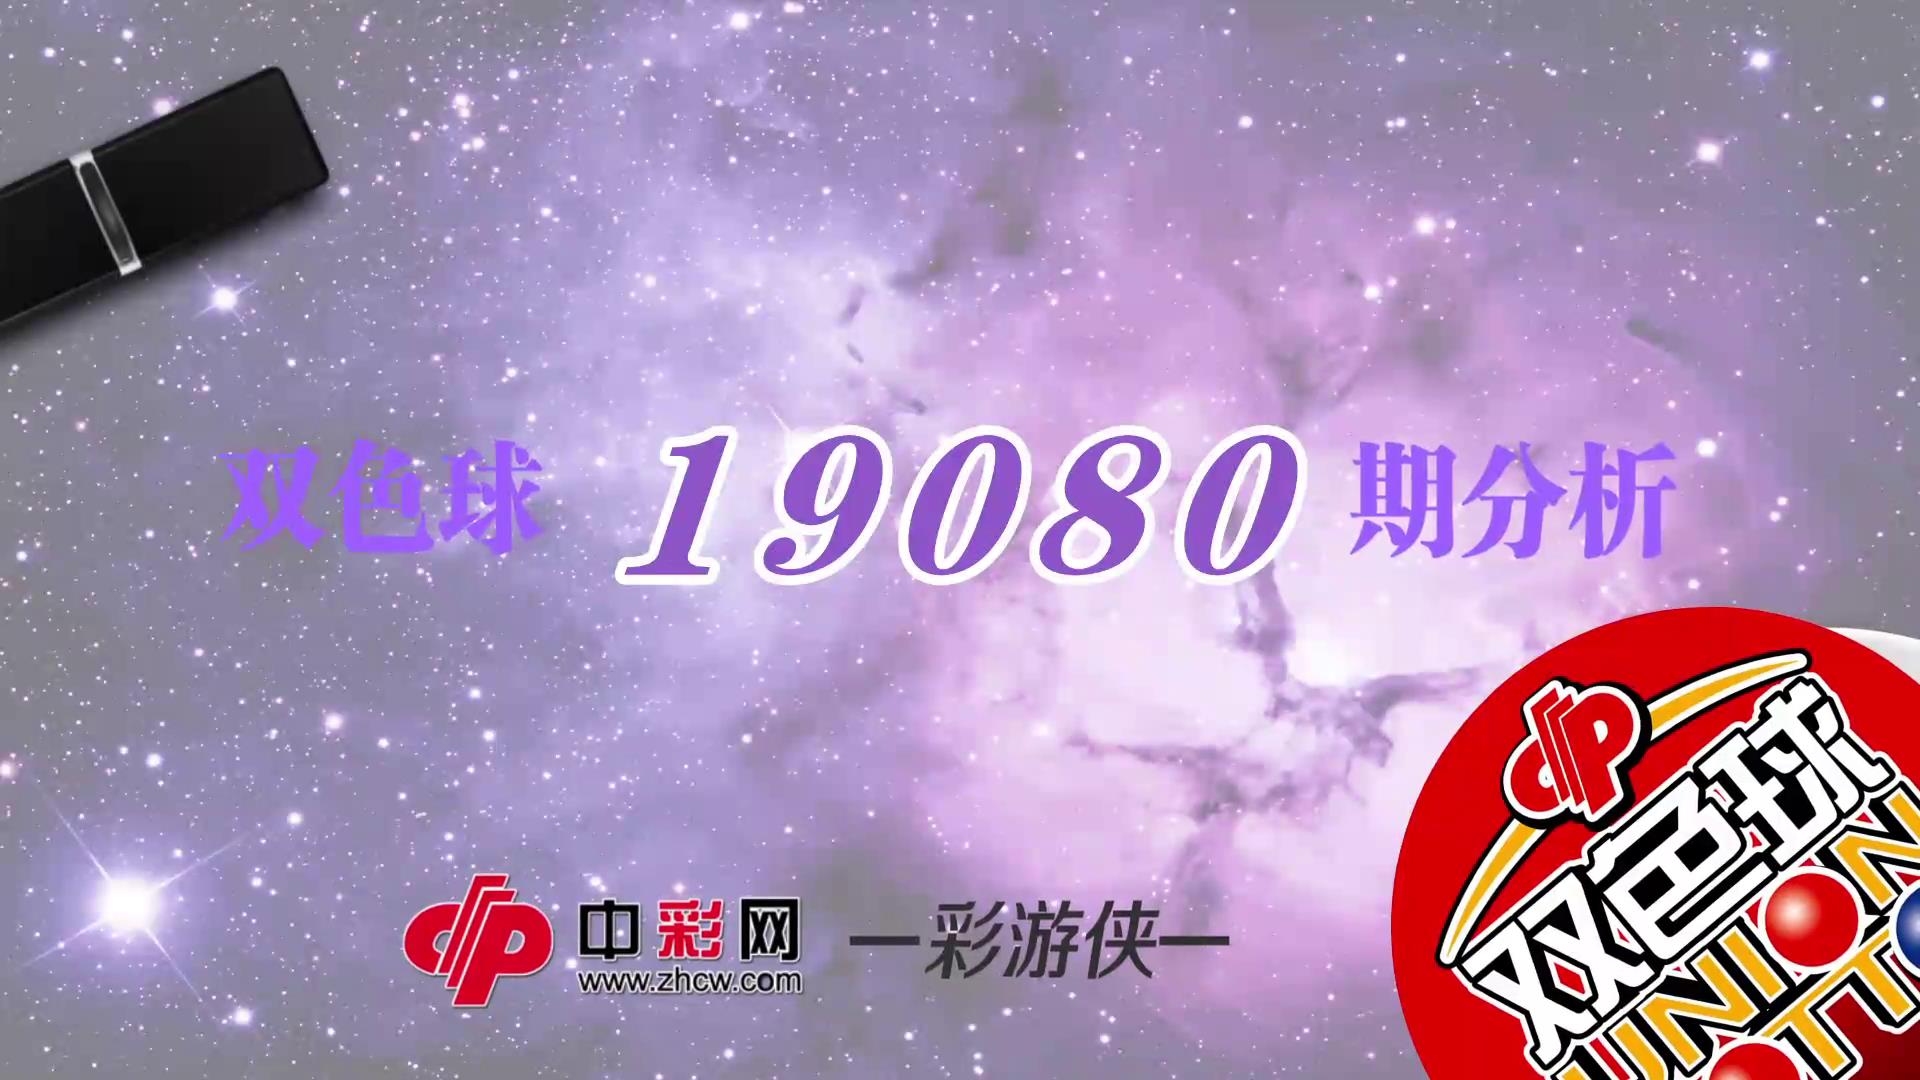 【中彩视频】彩游侠双色球第19080期